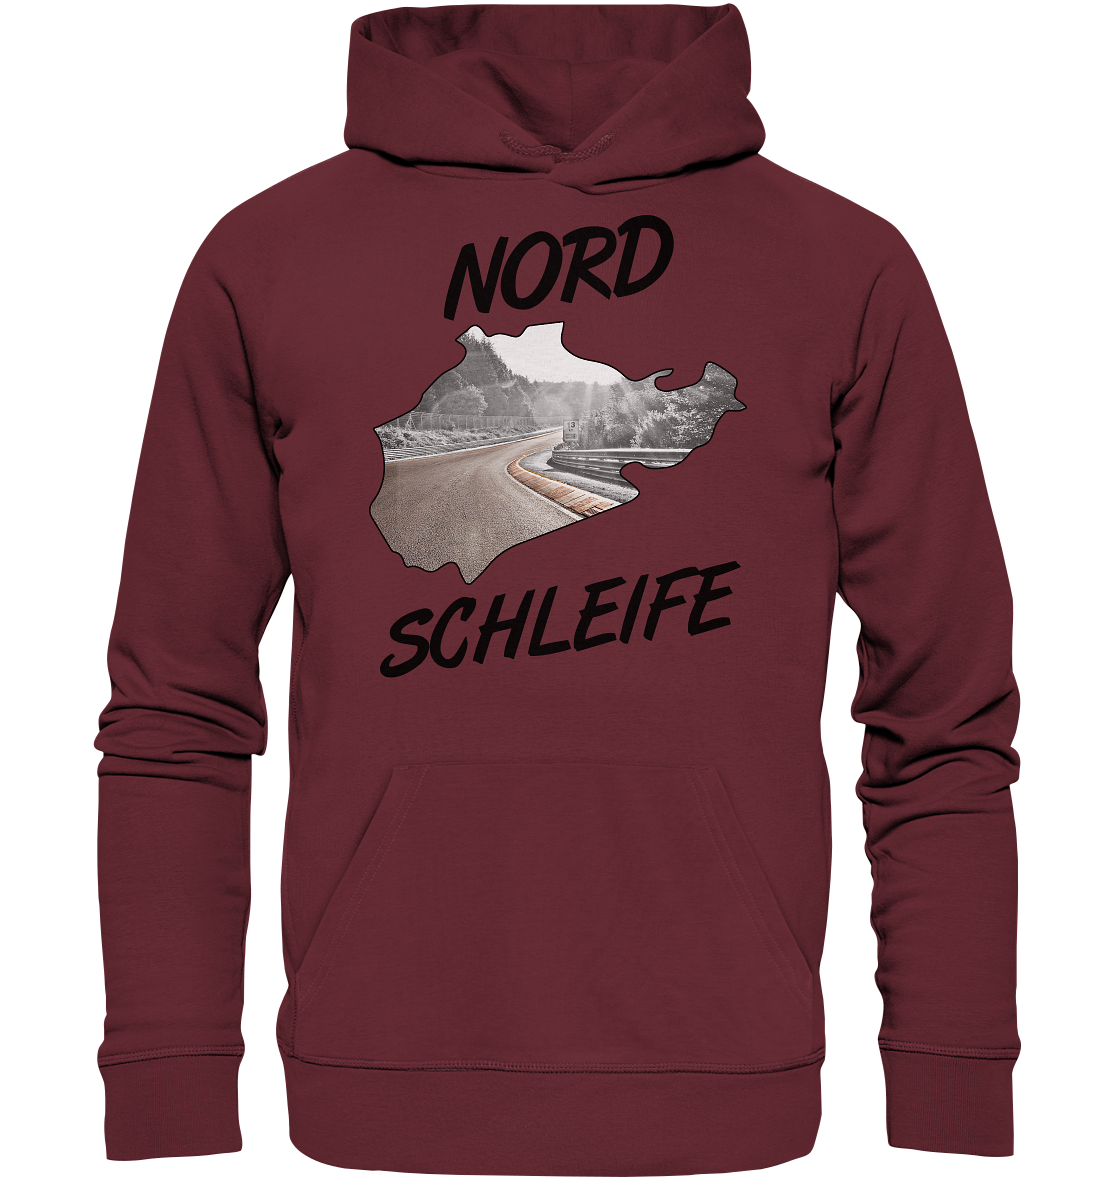 ALLG_NordschleifeHD - Organic Hoodie